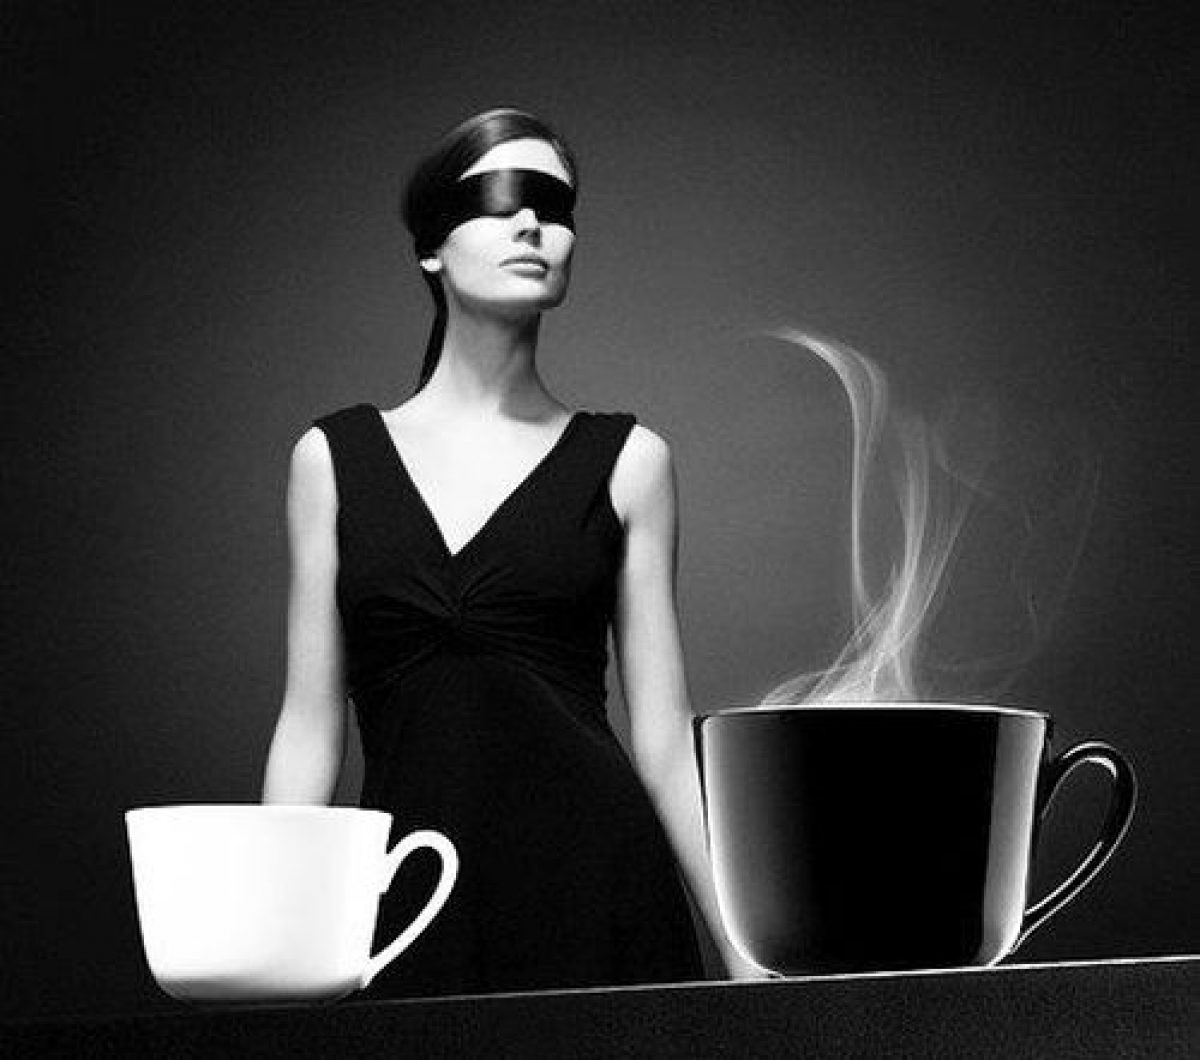 15 Beneficii mari de cafea pentru sănătate | Thpanorama - Acum deveniți mai buni